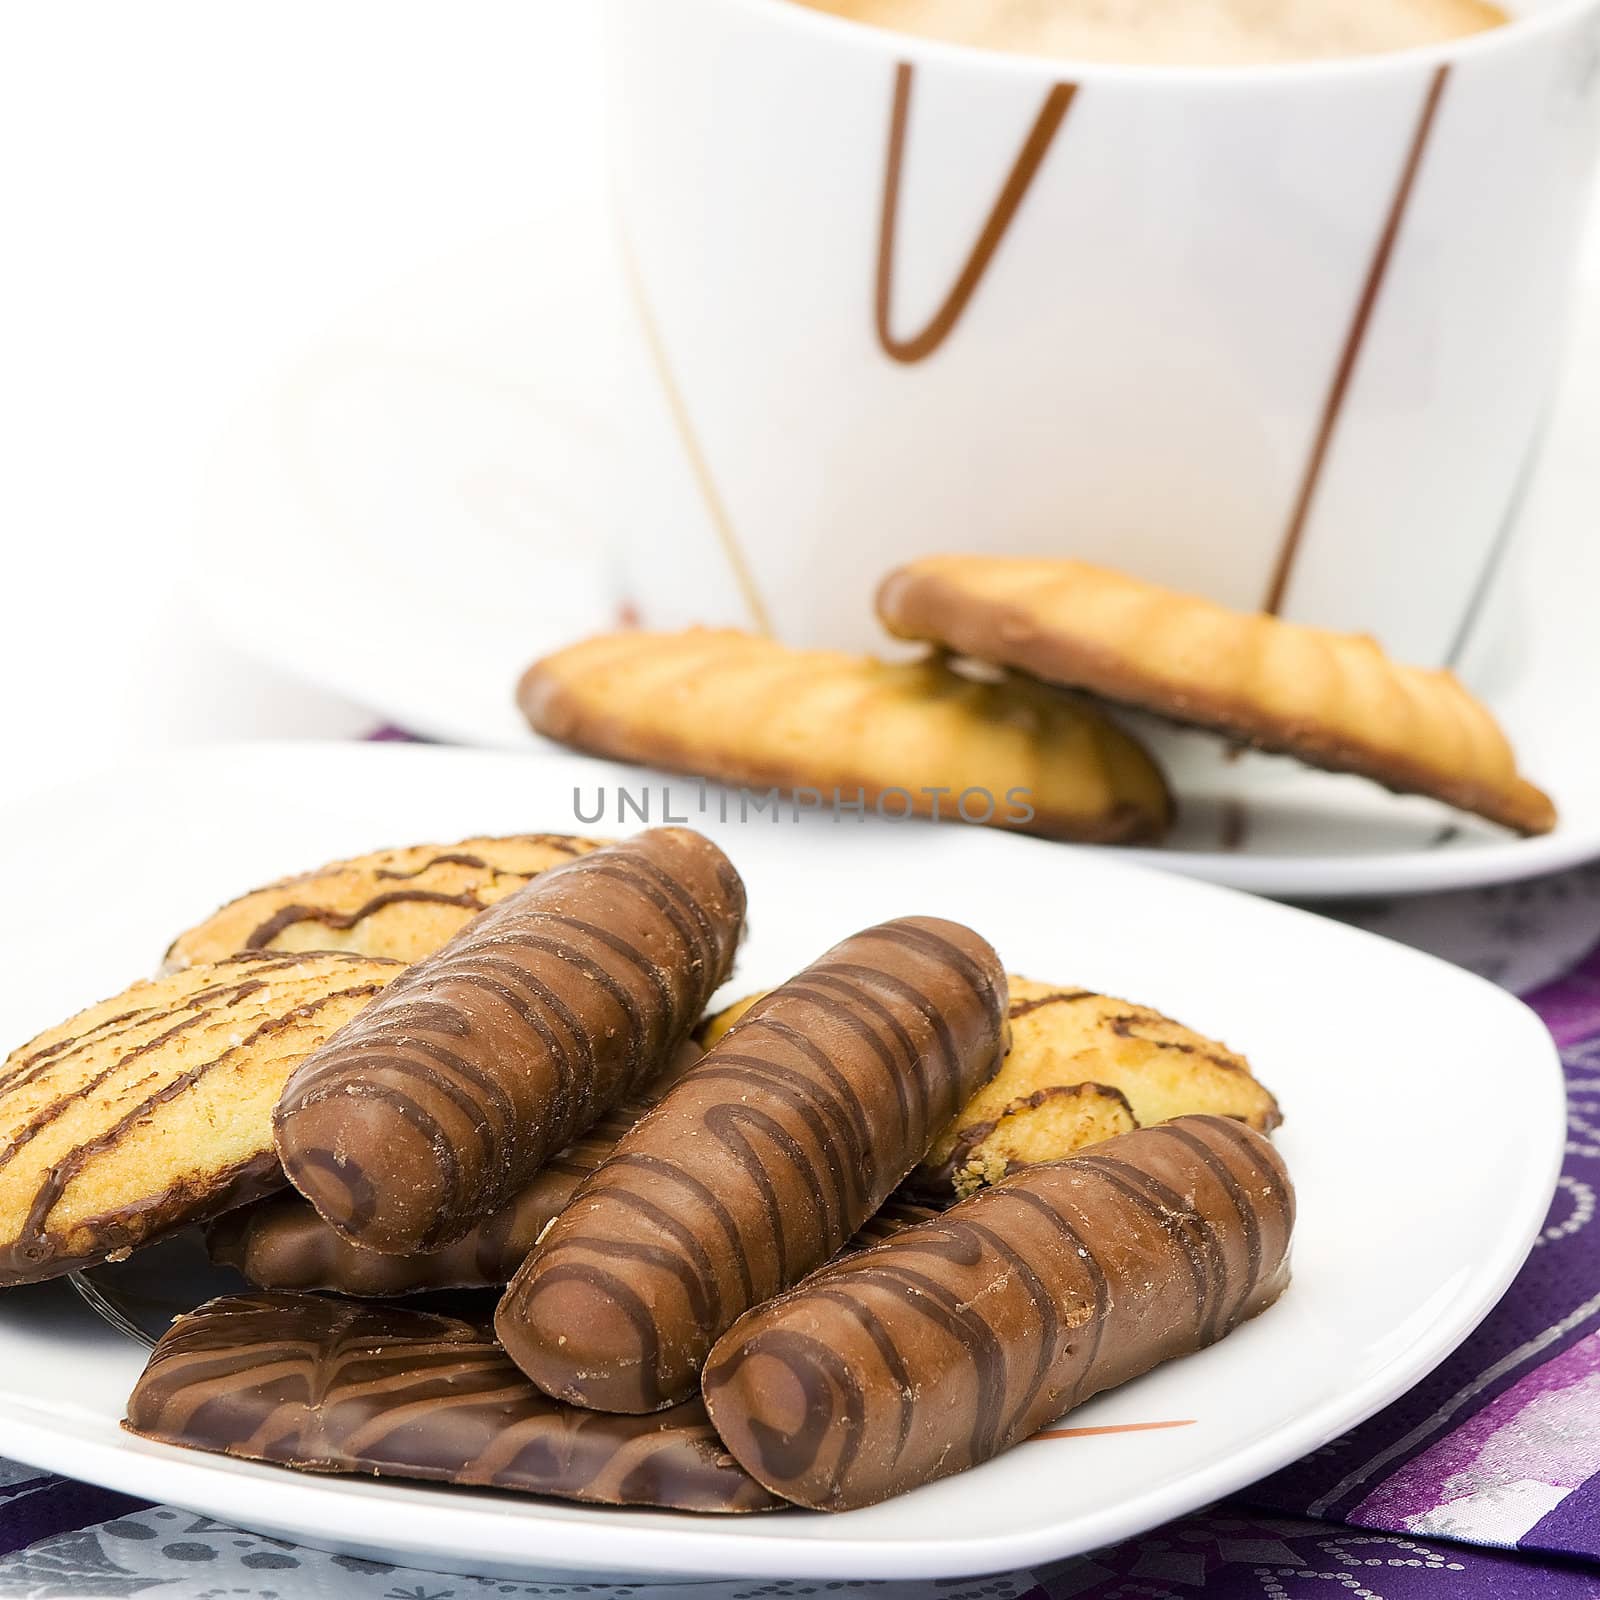 Chocolate cookie closeup  by miradrozdowski